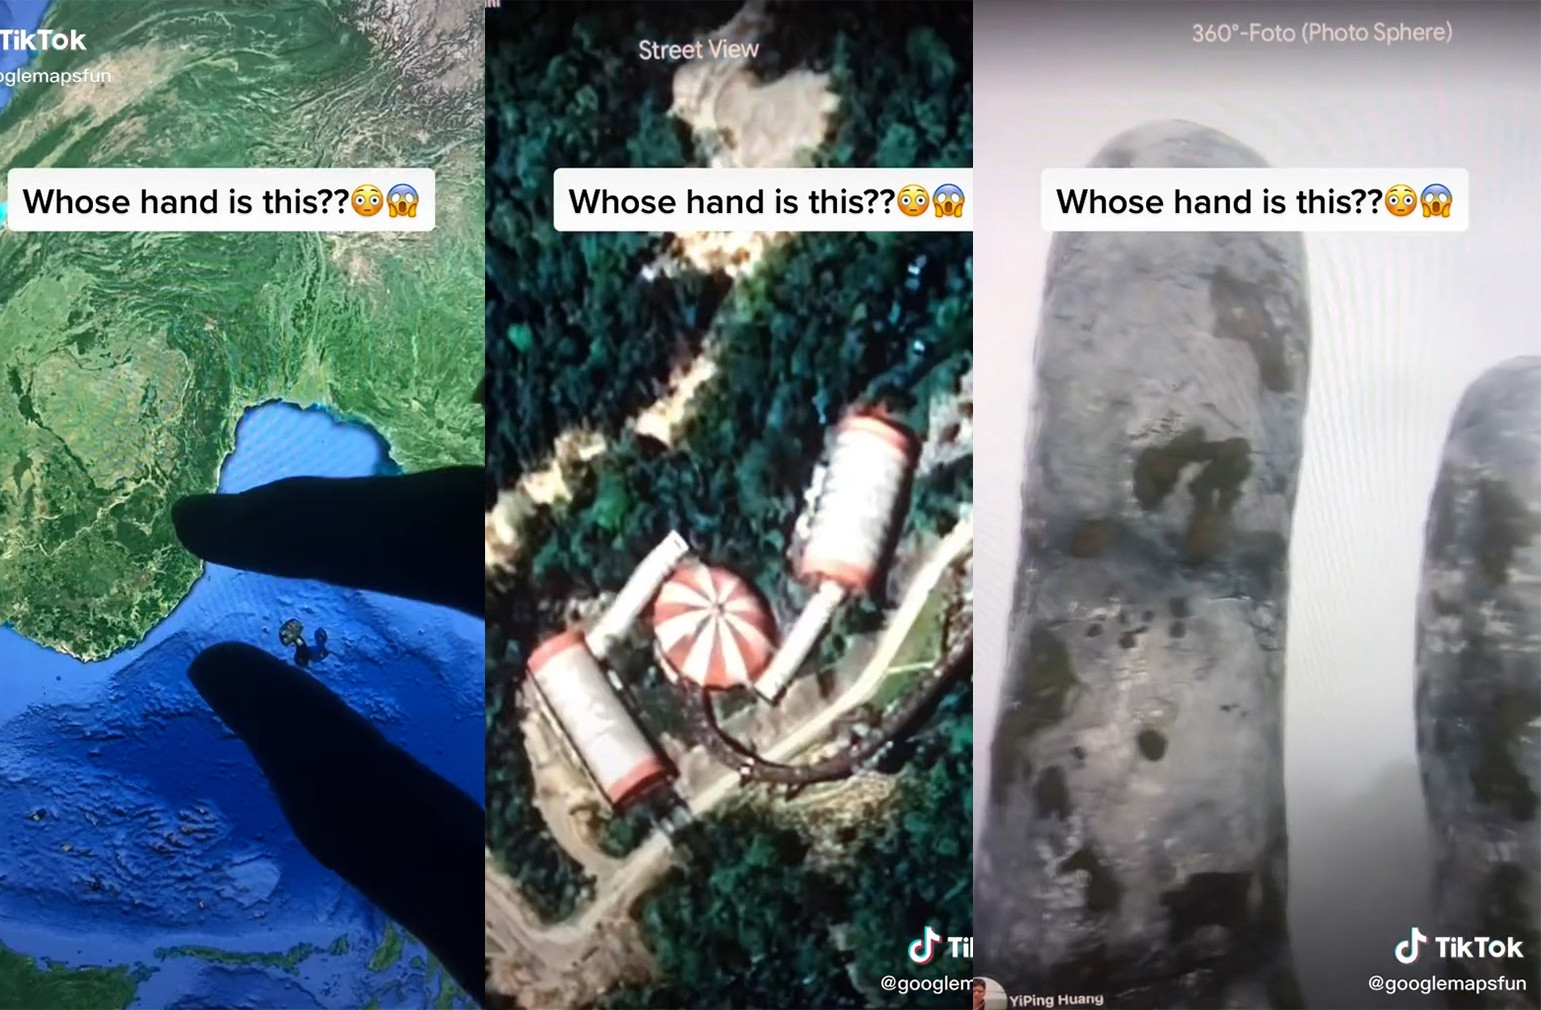 2 triệu lượt xem đoạn video về bàn tay khổng lồ ở Đà Nẵng-1